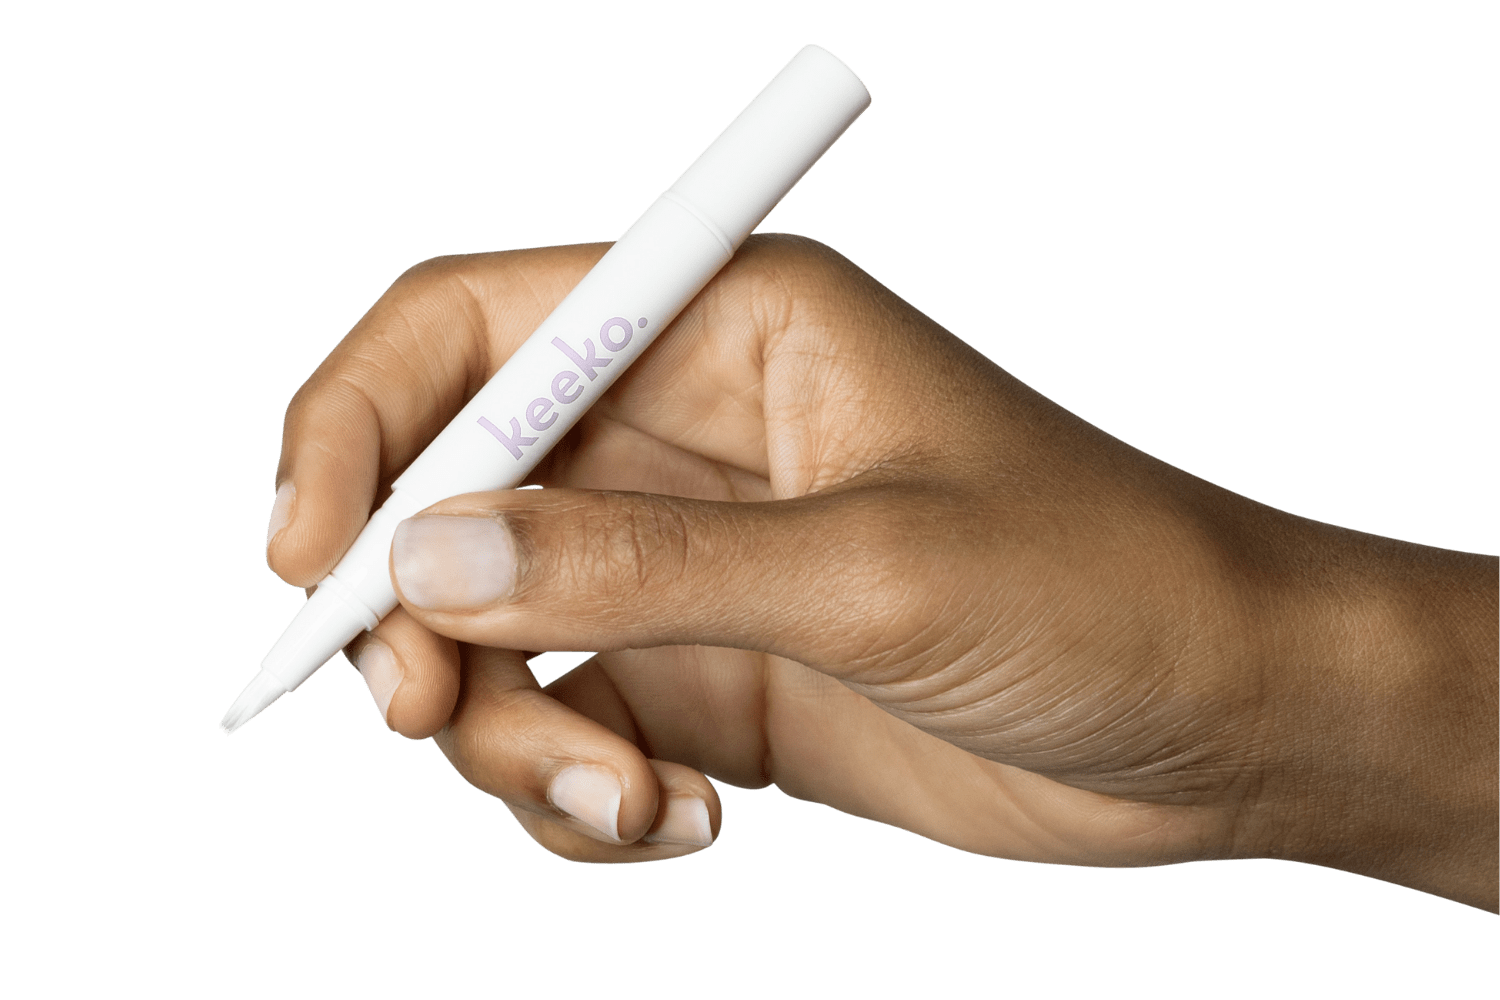 Botanical Teeth Whitening Pen